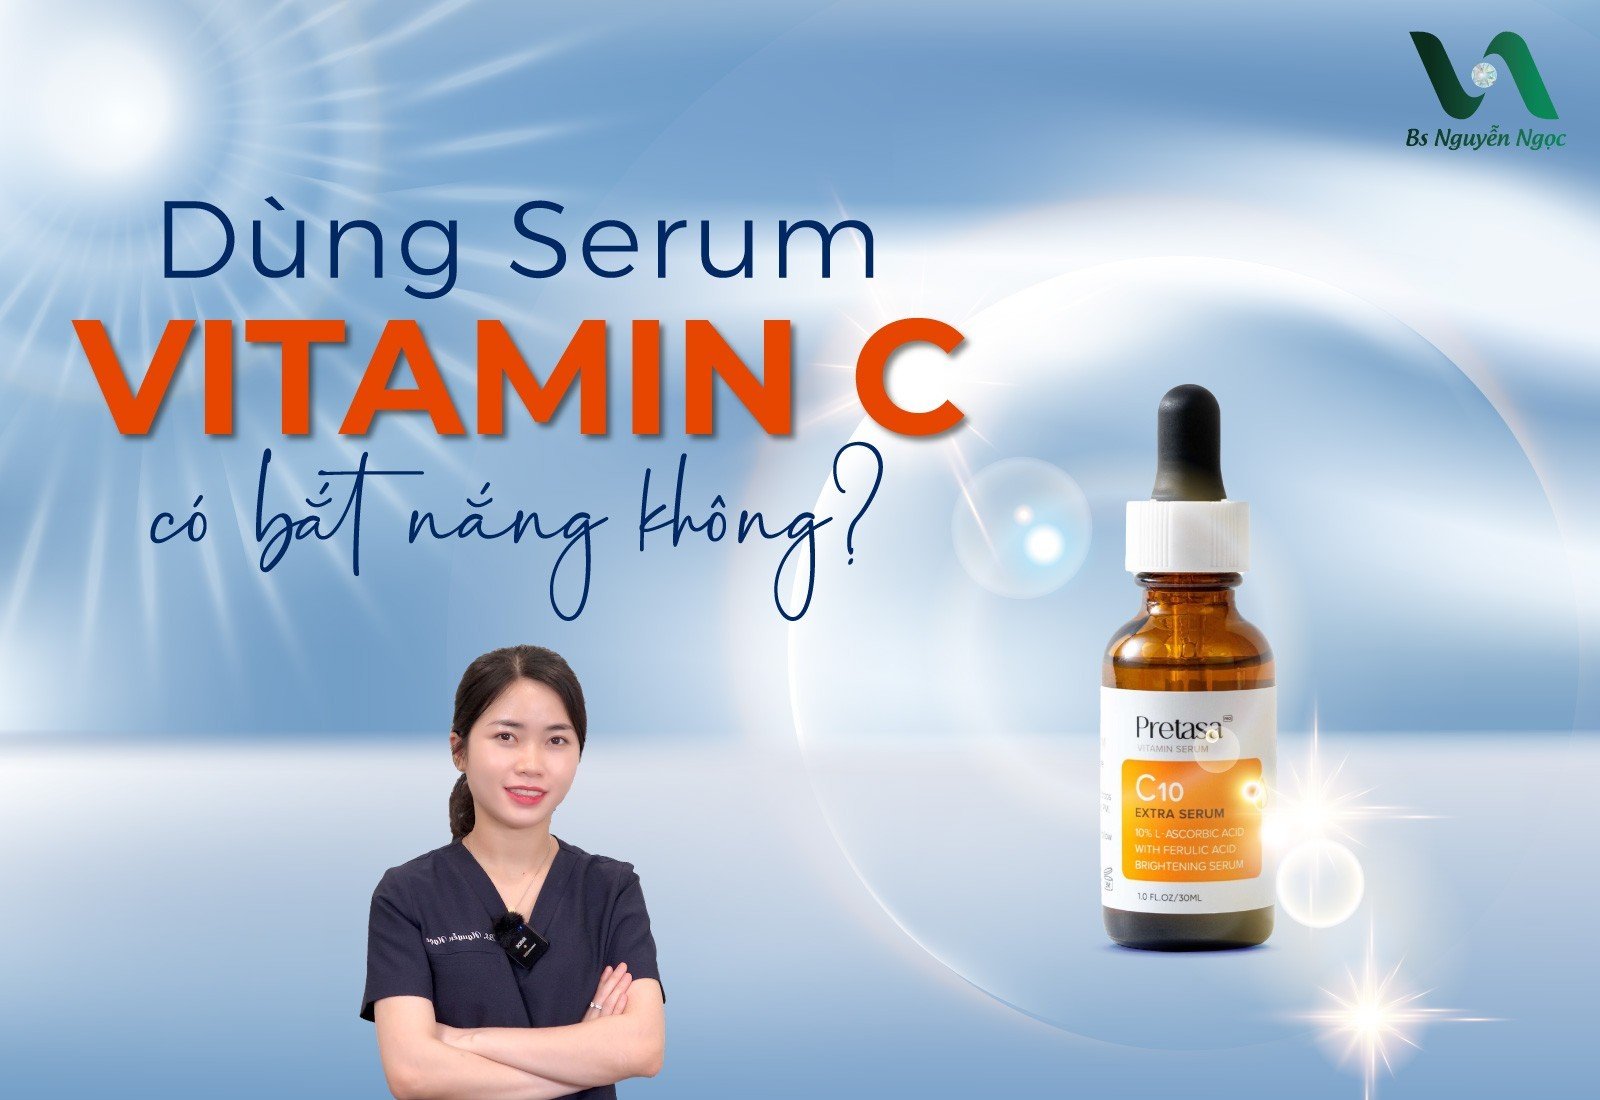 Dùng Serum Vitamin C có bắt nắng không?